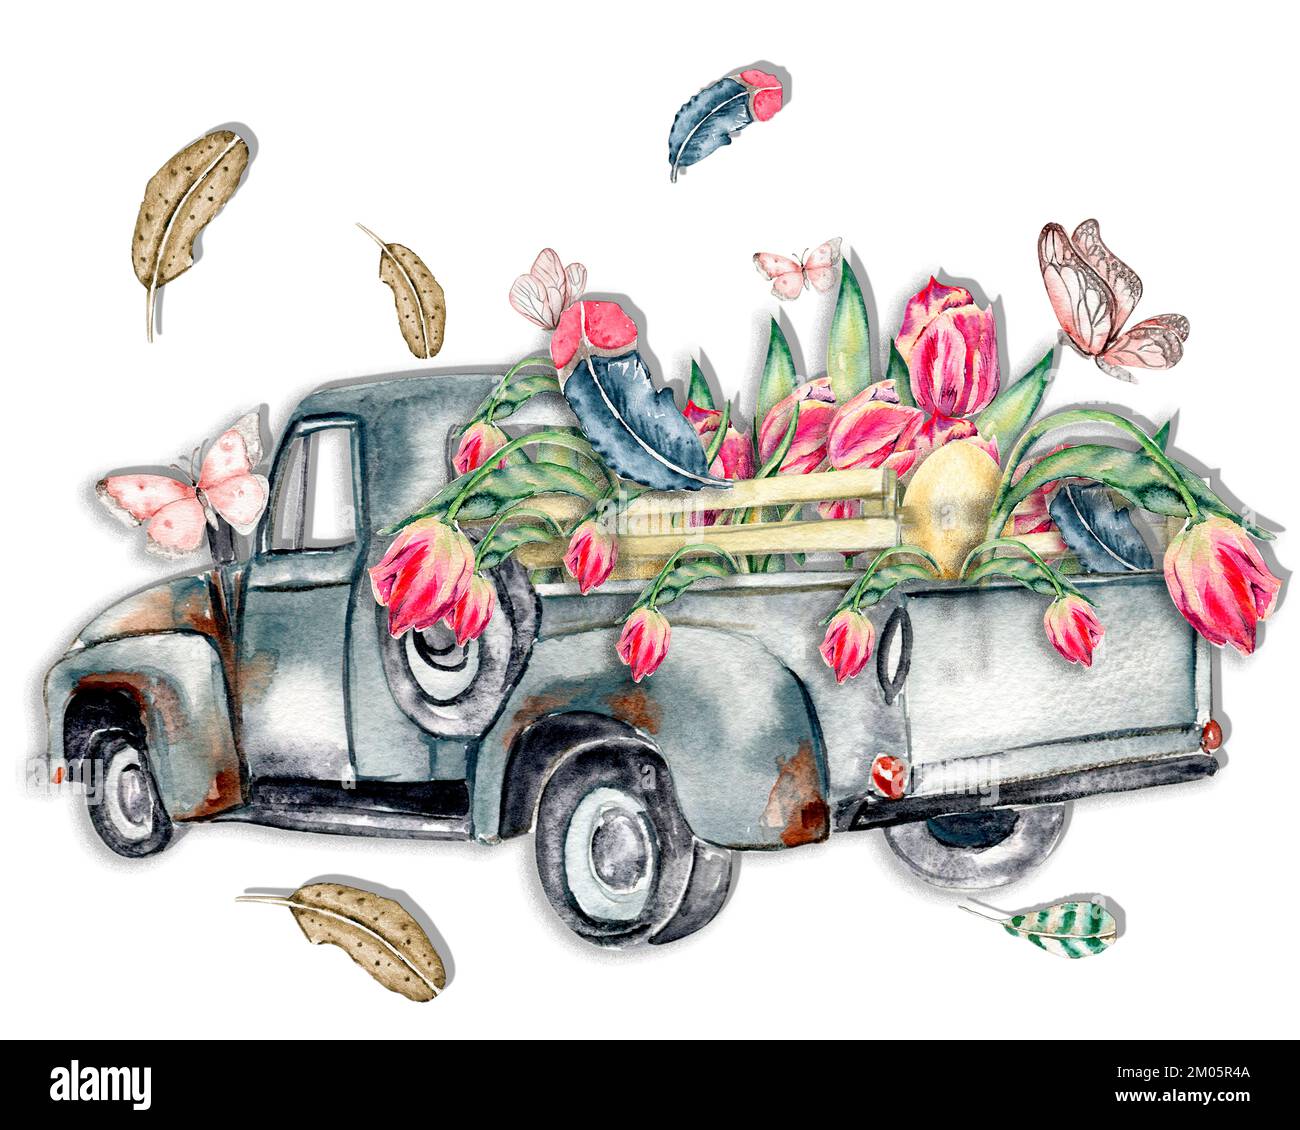 Handgezogene Kartenvorlage in Aquarell mit pinkfarbenen Tulpen. Illustration eines niedlichen Häschen in Aquarellfarben, Blumen, Pflanzen und Grußrahmen. Bilder für Poster, Stockfoto